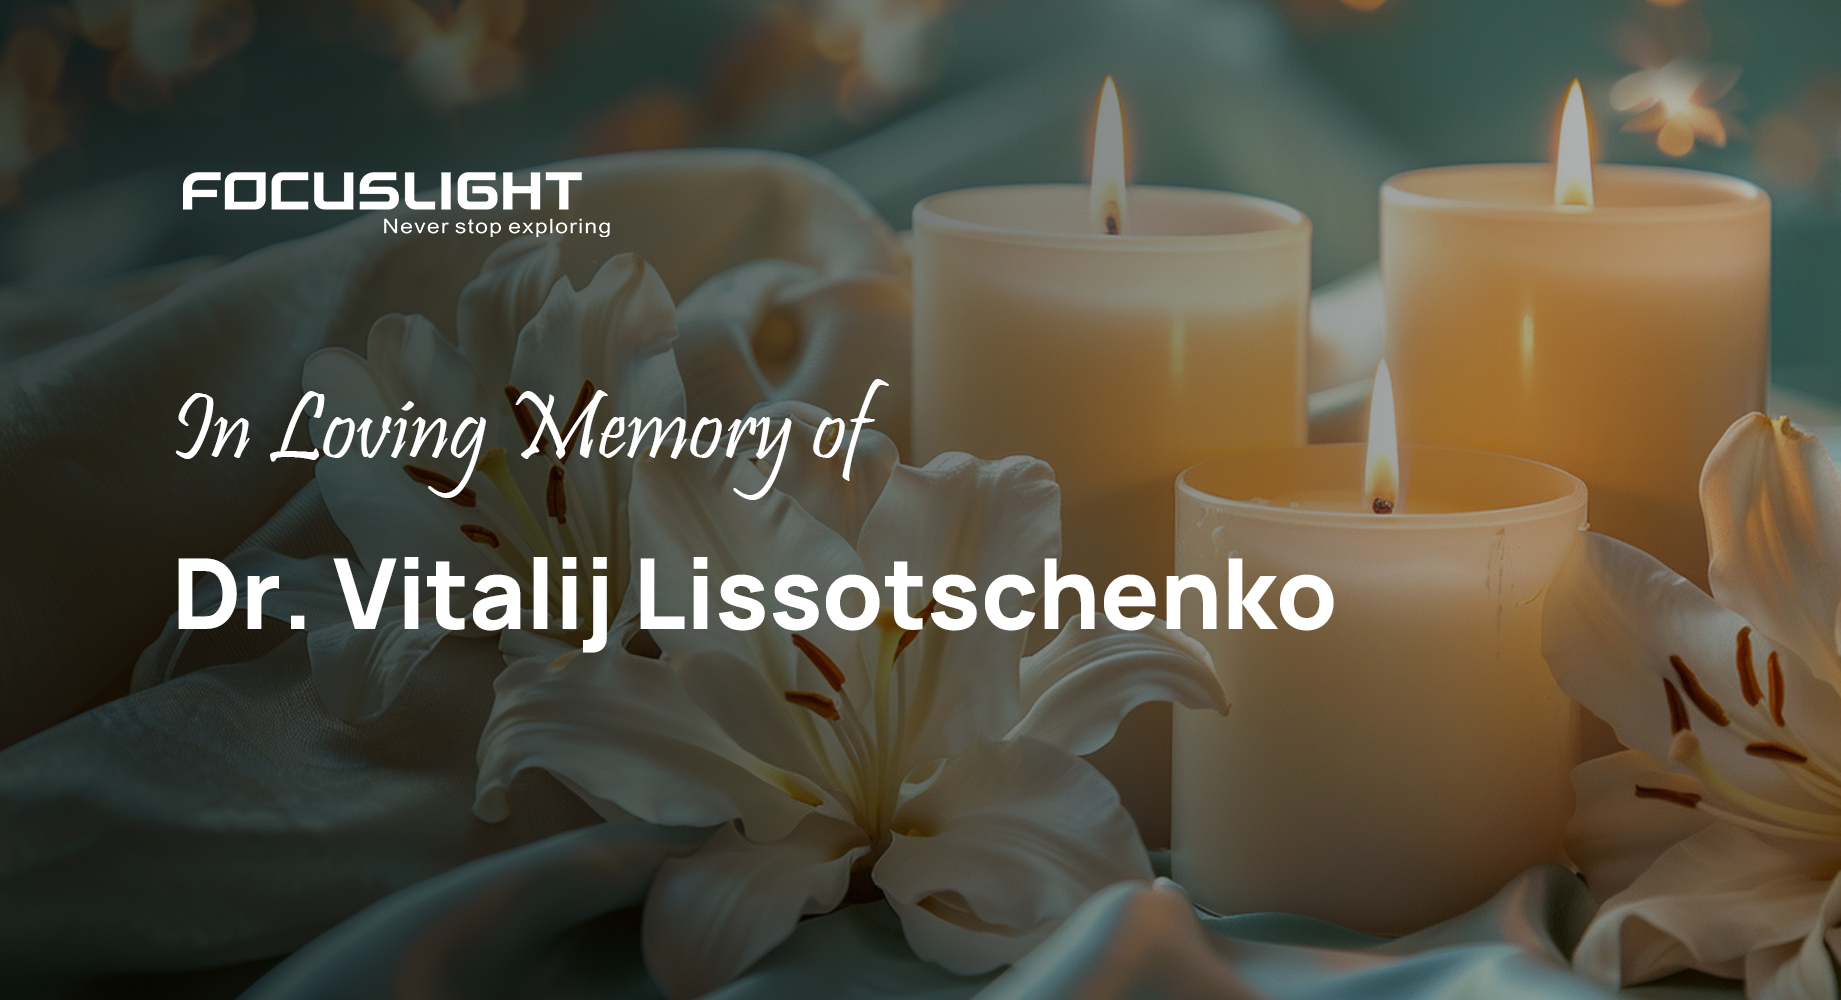 In Loving Memory of Dr. Vitalij Lissotschenko